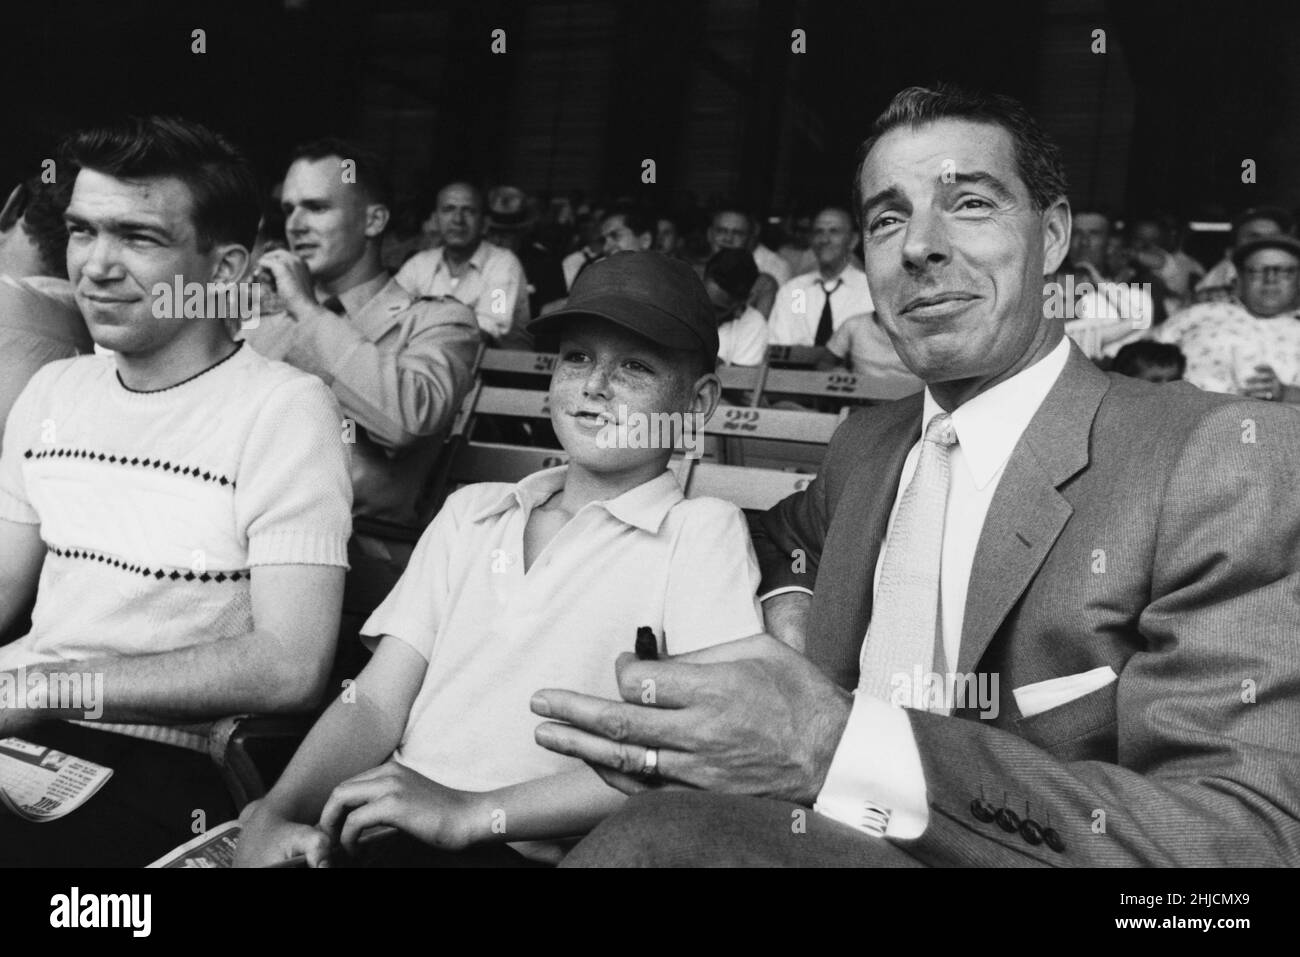 Joe DiMaggio a été photographié dans les tribunes lors d'un match de baseball à New York, en 1956. Banque D'Images